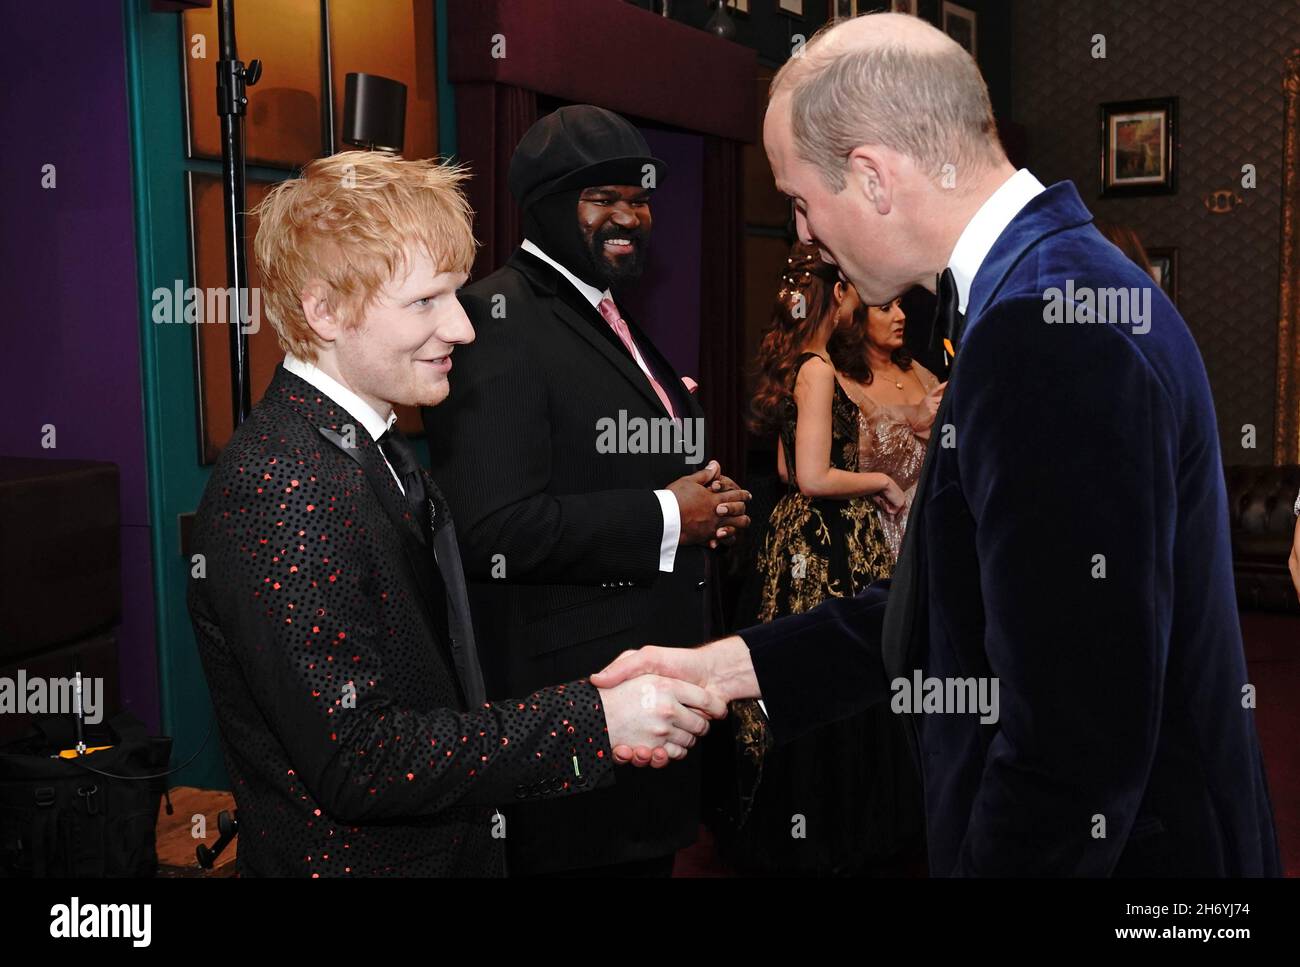 Le duc de Cambridge s'est exprimé devant Ed Sheeran après la Royal Variety Performance au Royal Albert Hall, Londres.Date de la photo: Jeudi 18 novembre 2021. Banque D'Images